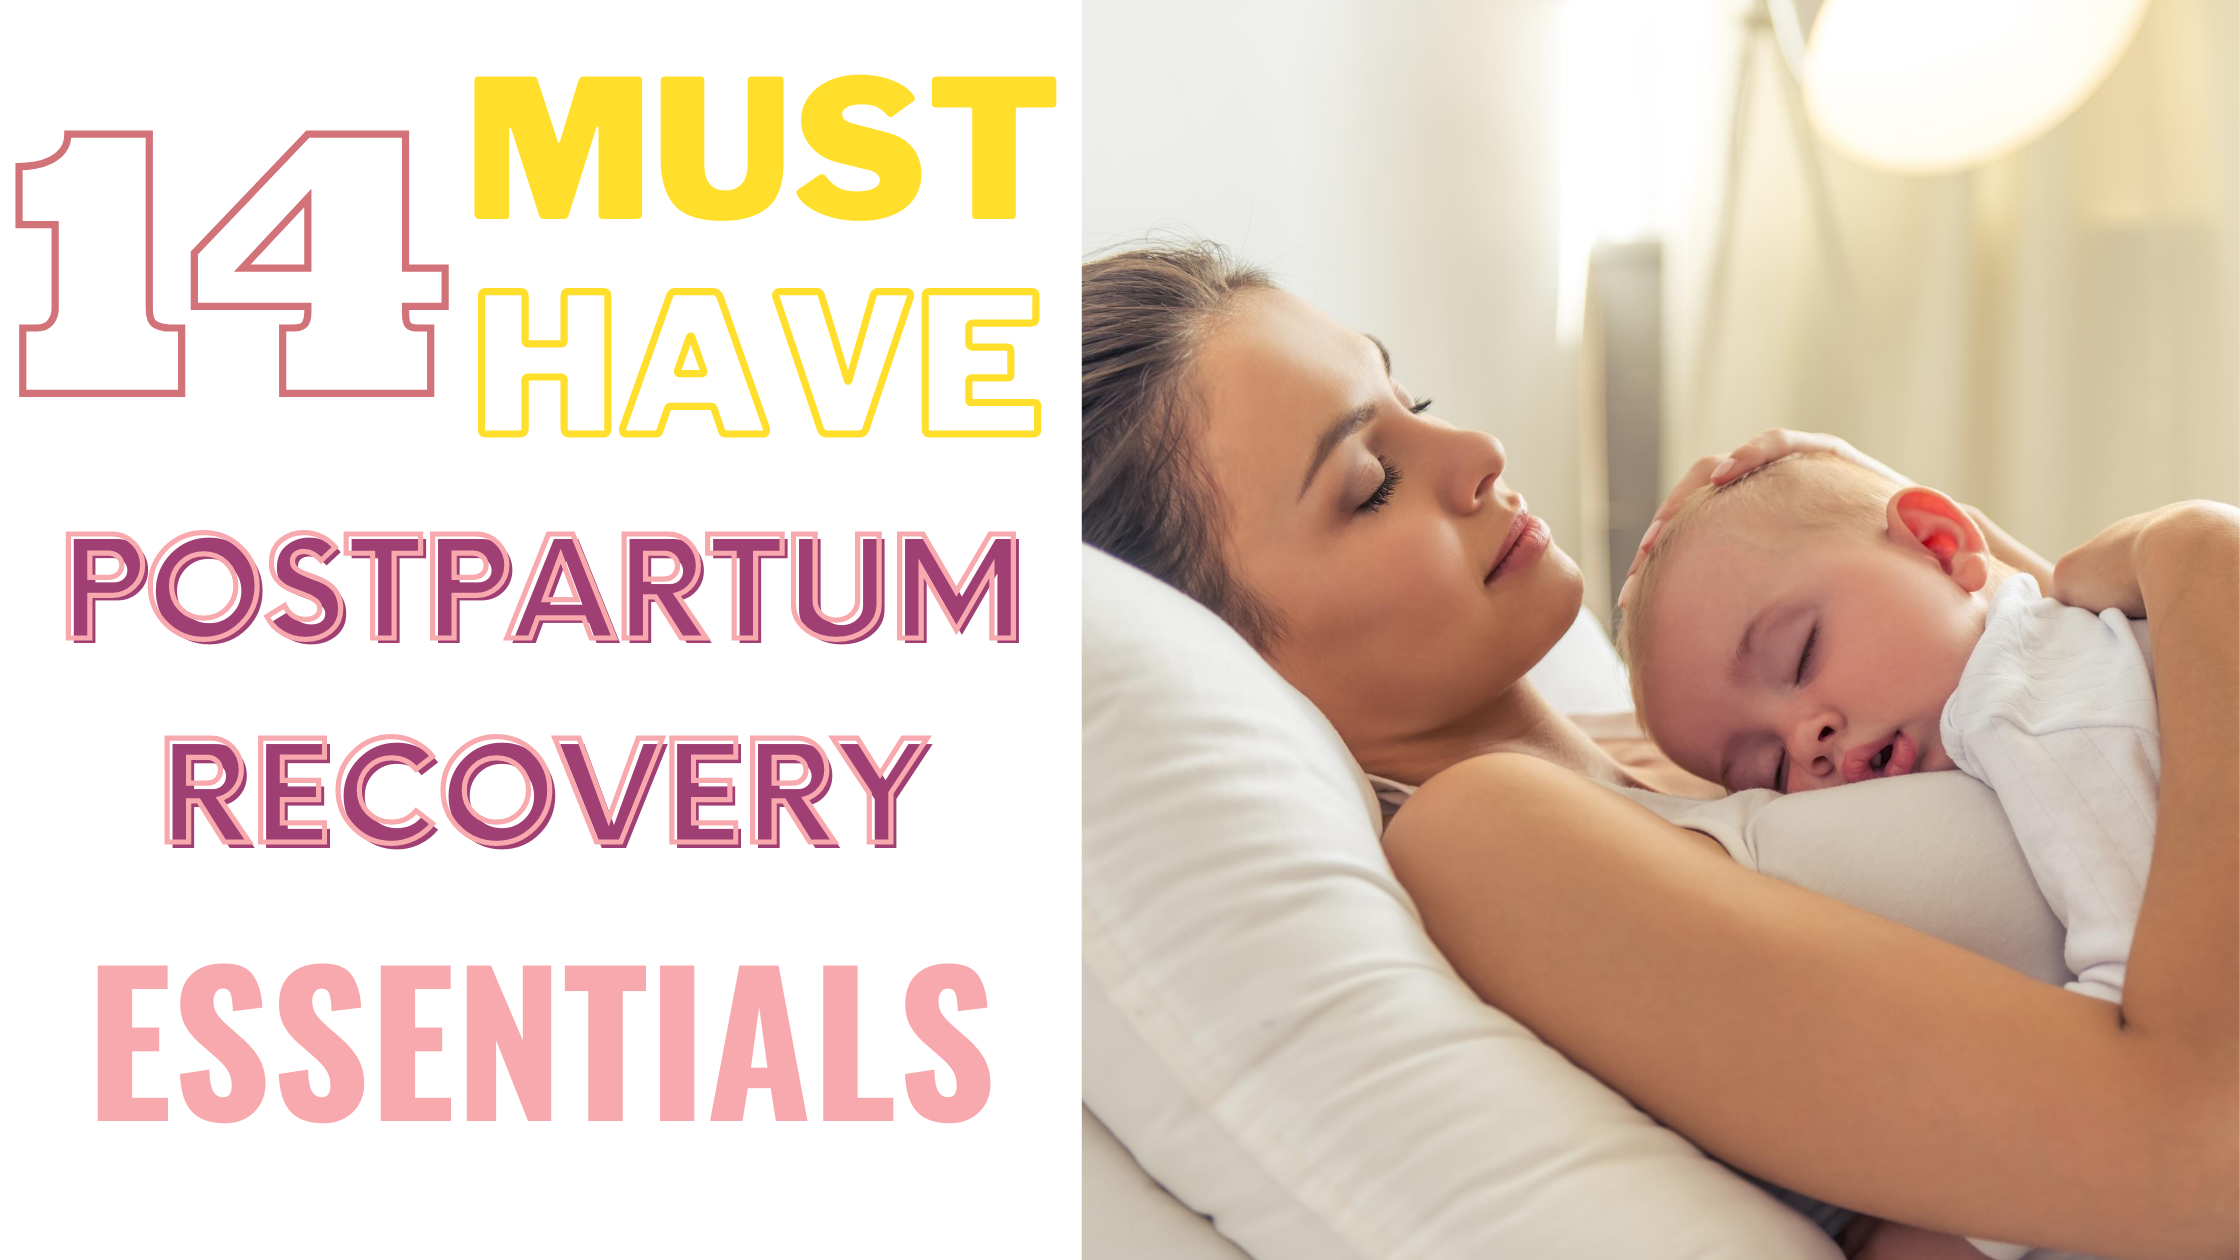 Postpartum Care Essentials Every New Mom Needs - Healthnut Nutrition